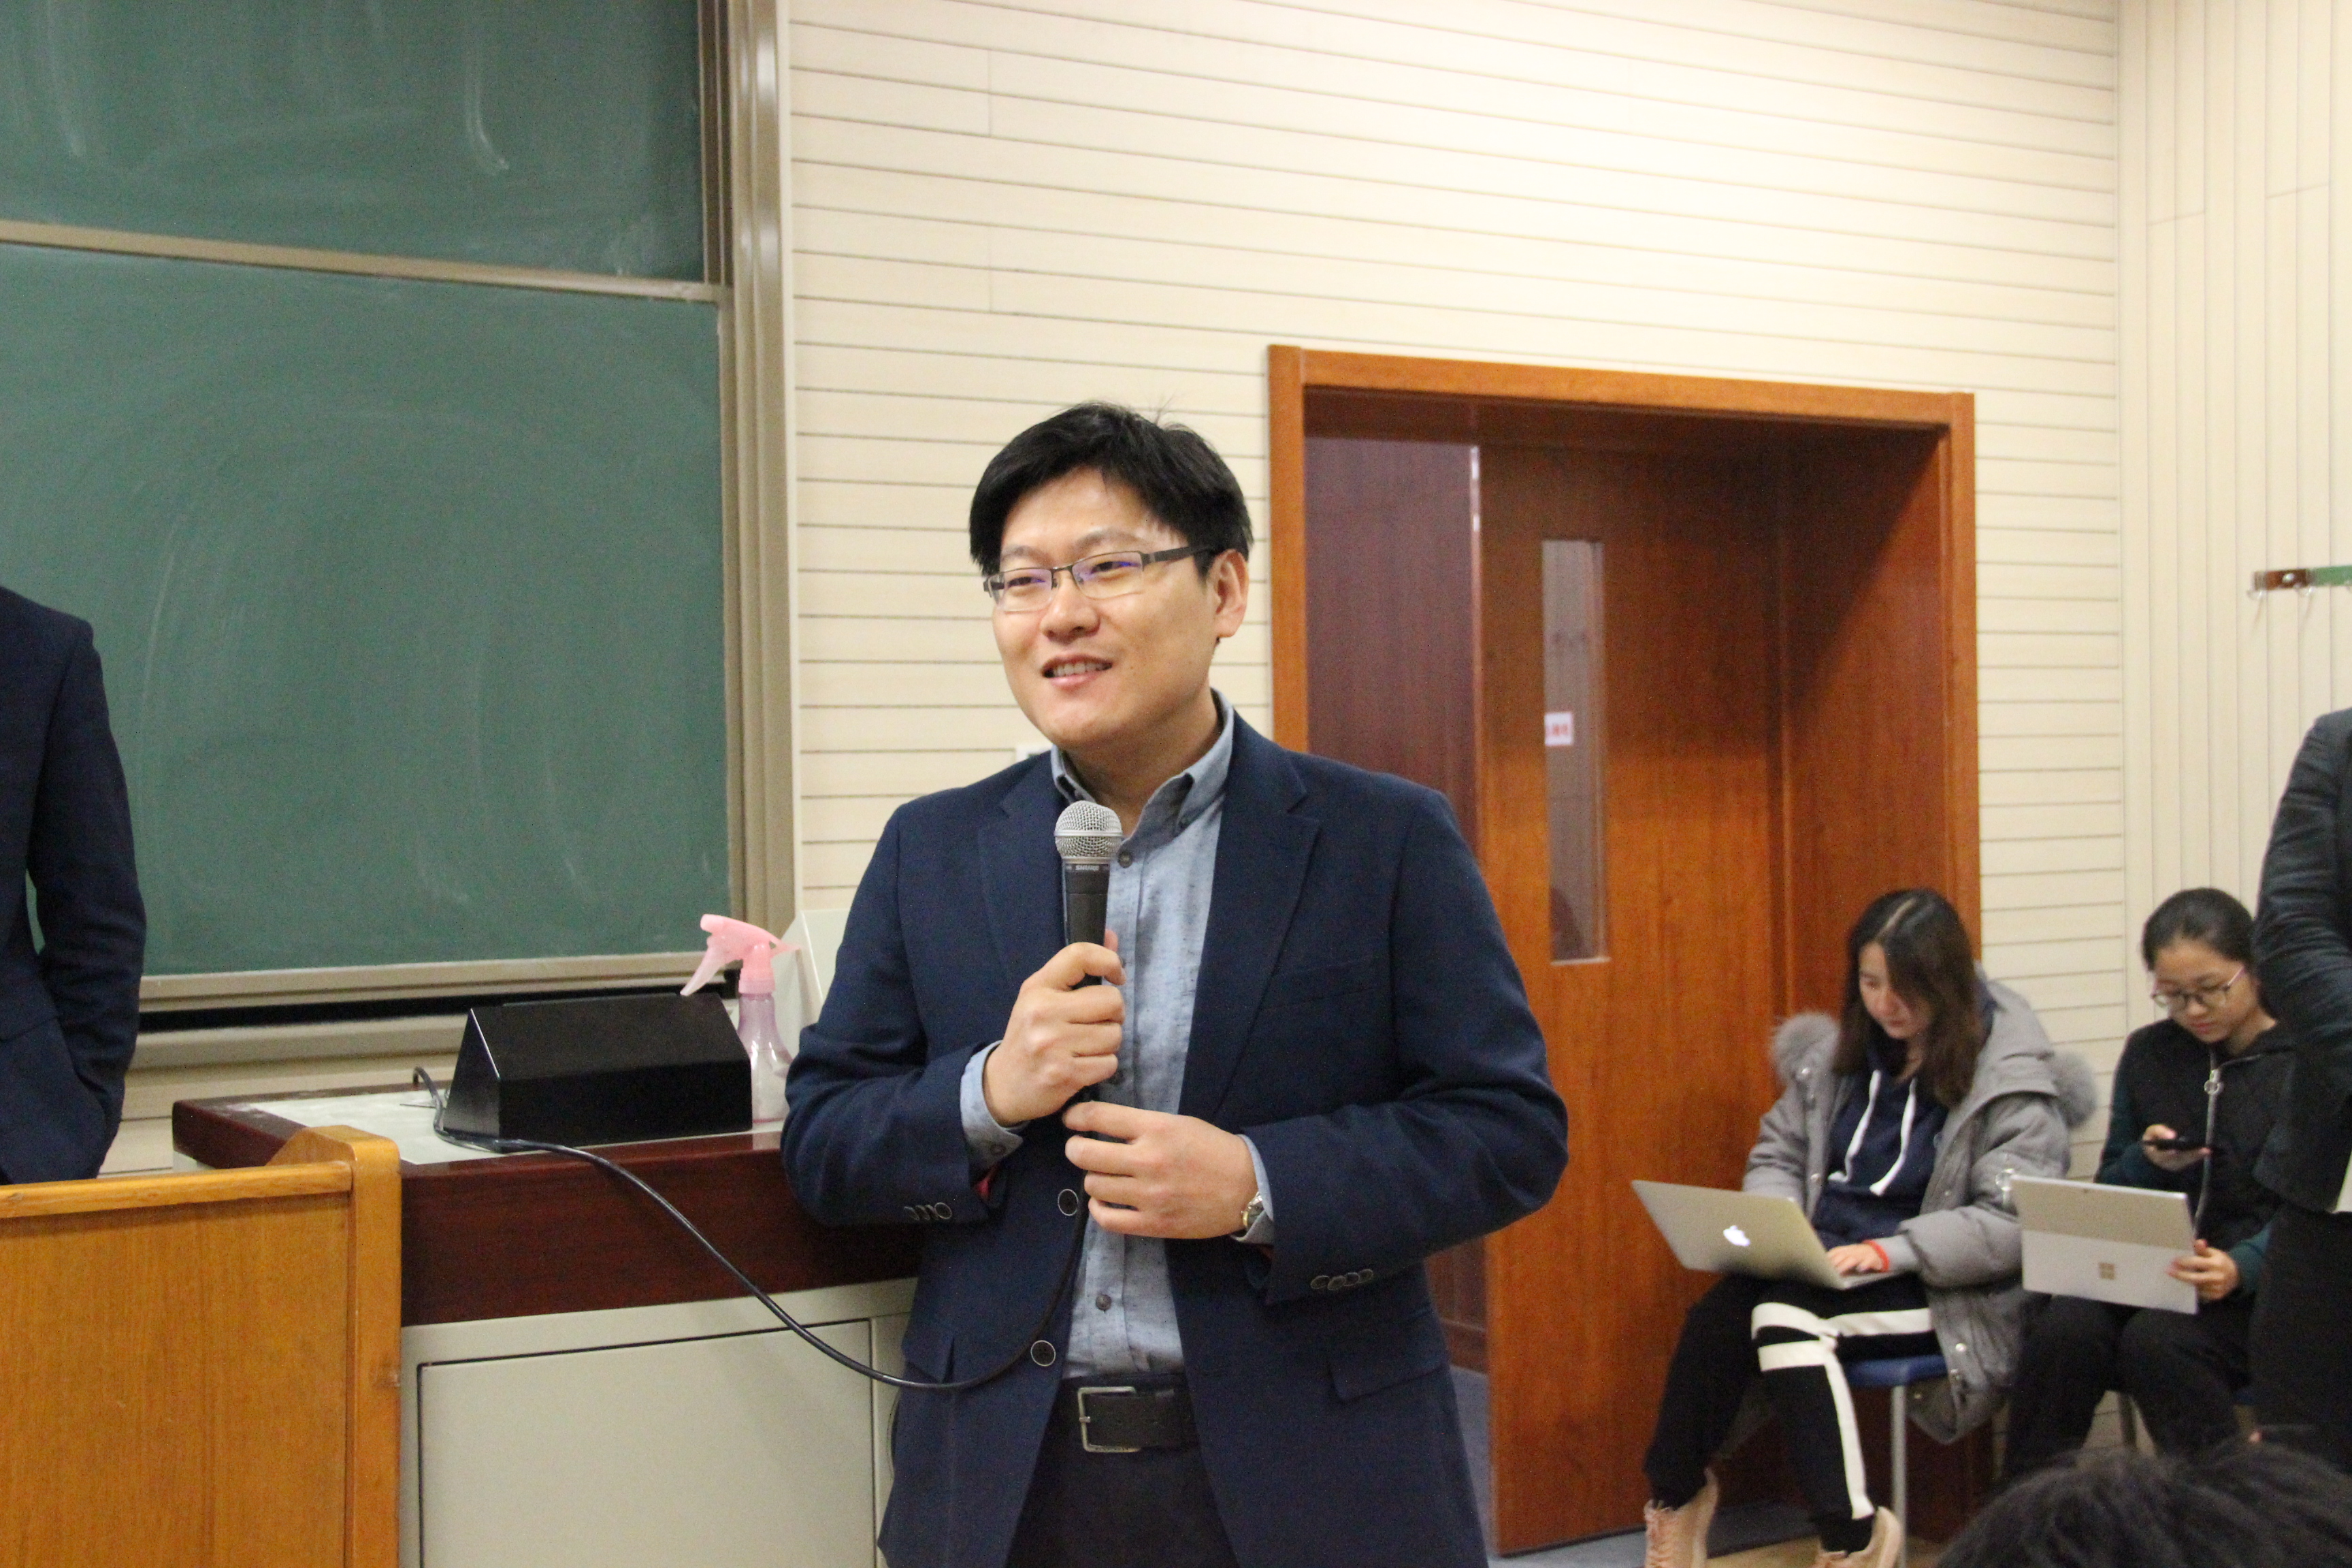 人大法学院副院长张翔教授谈"法学方法论与法学写作"